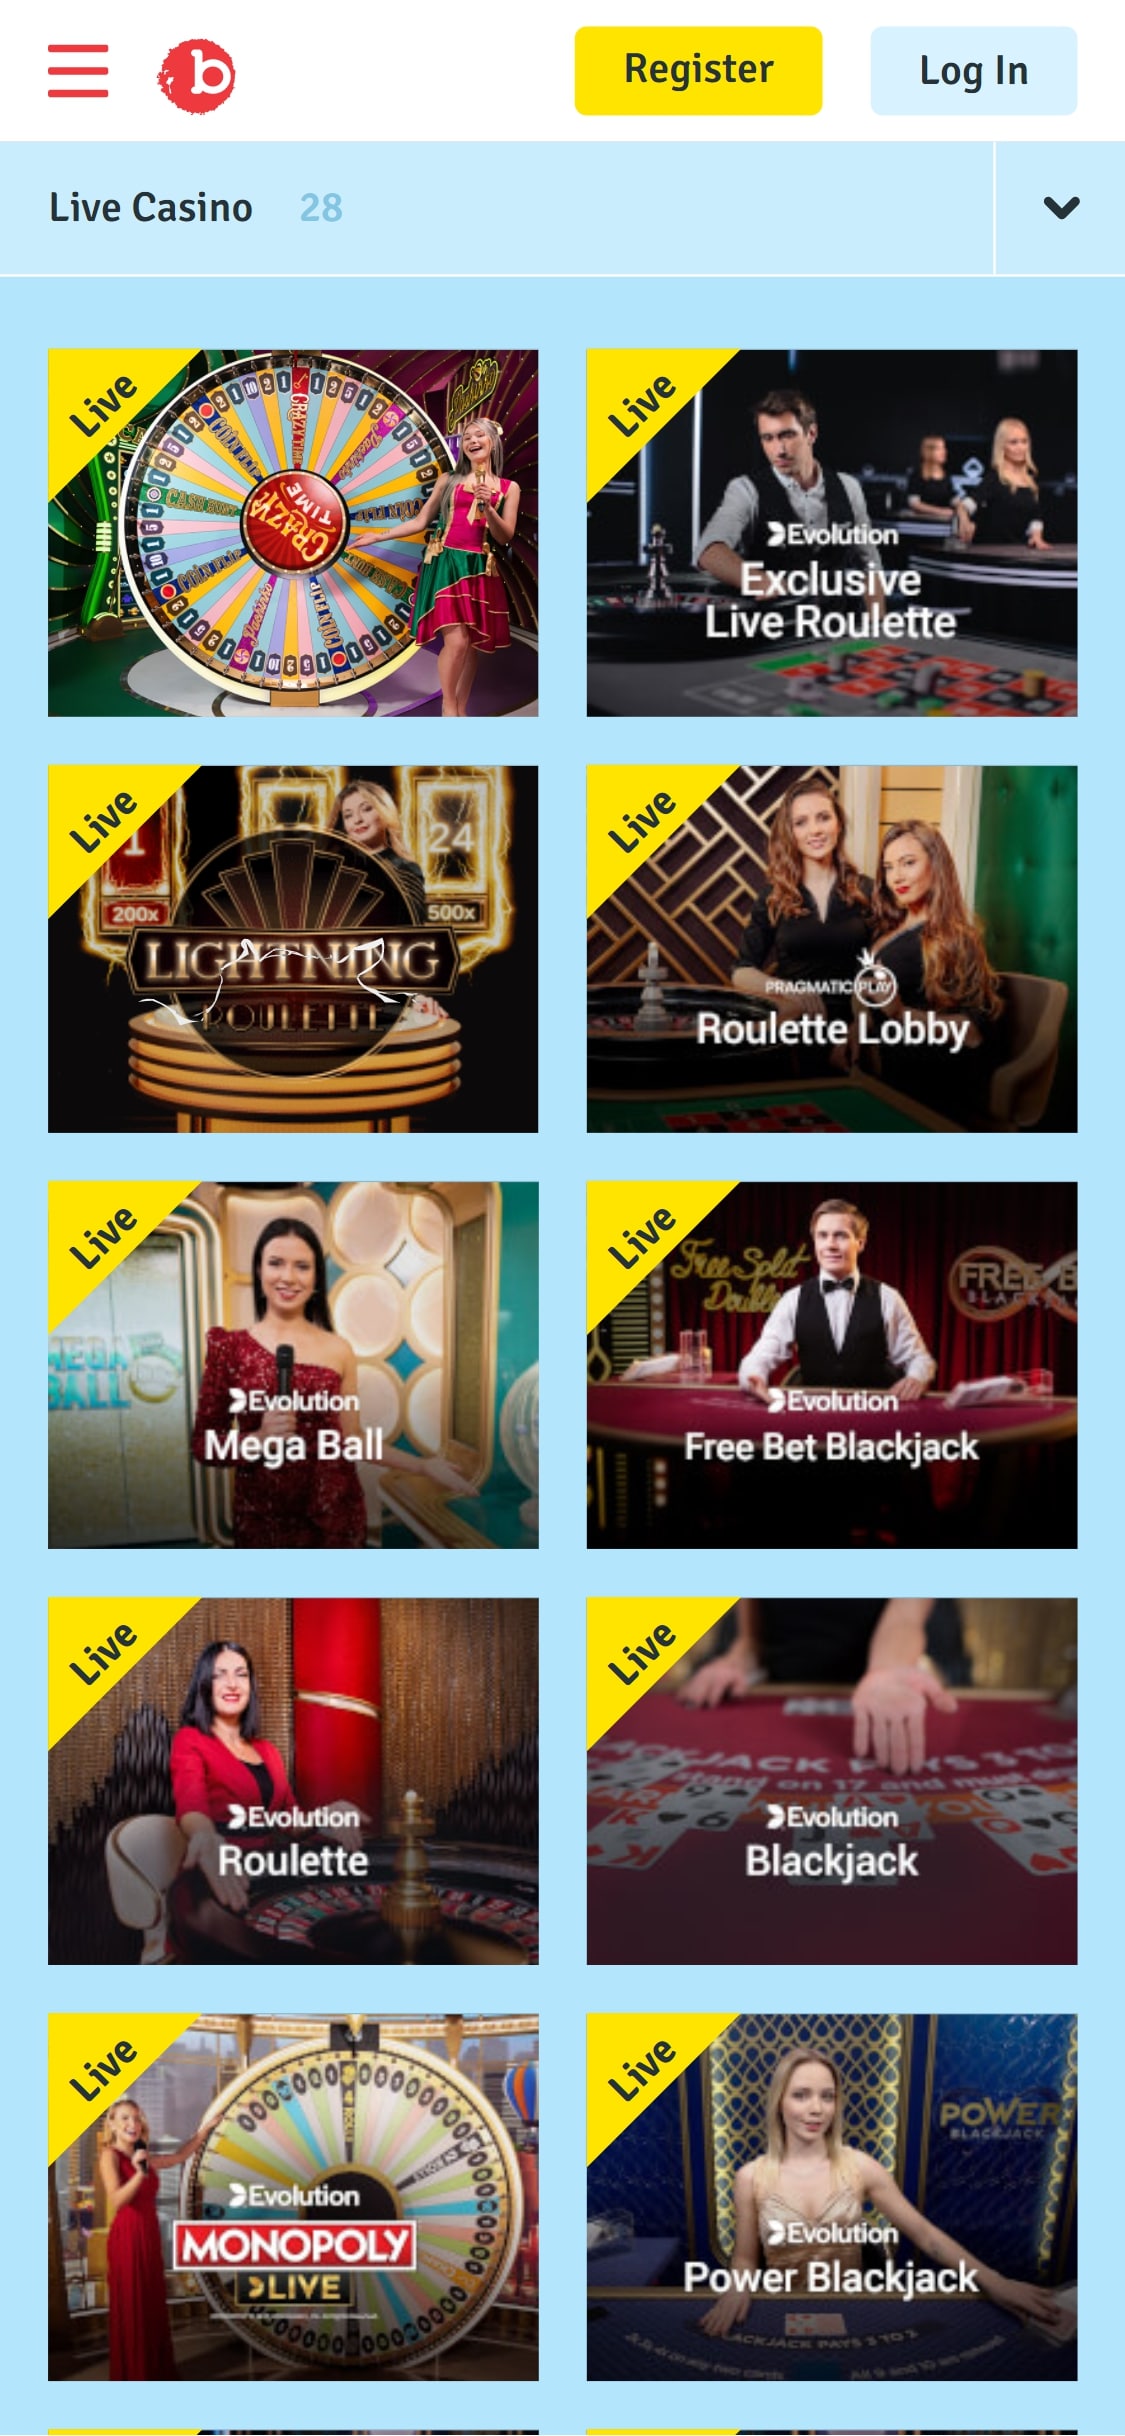 Bingo com Casino Mobile Live Dealer Games Review